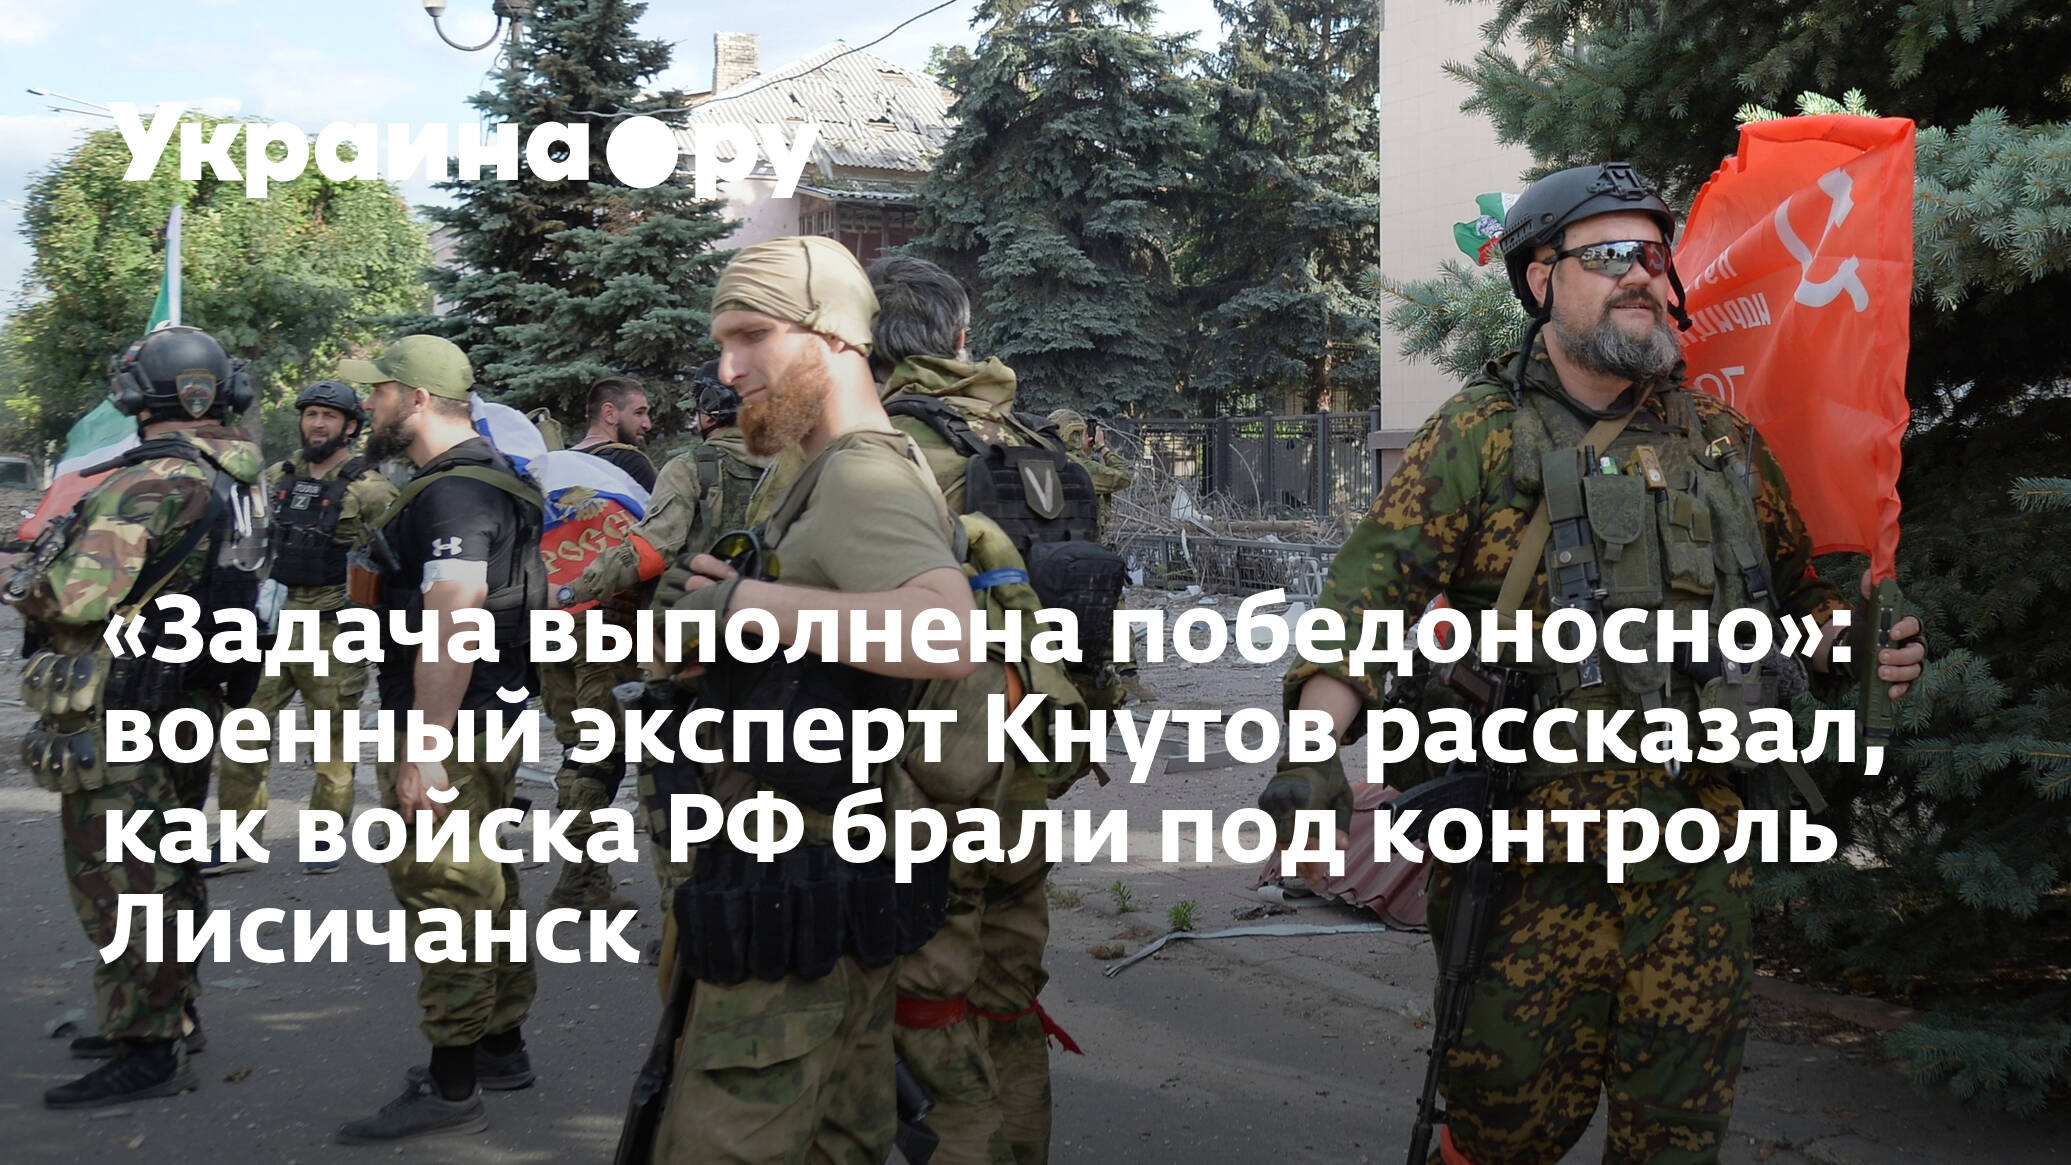 Кнутов военный эксперт фото